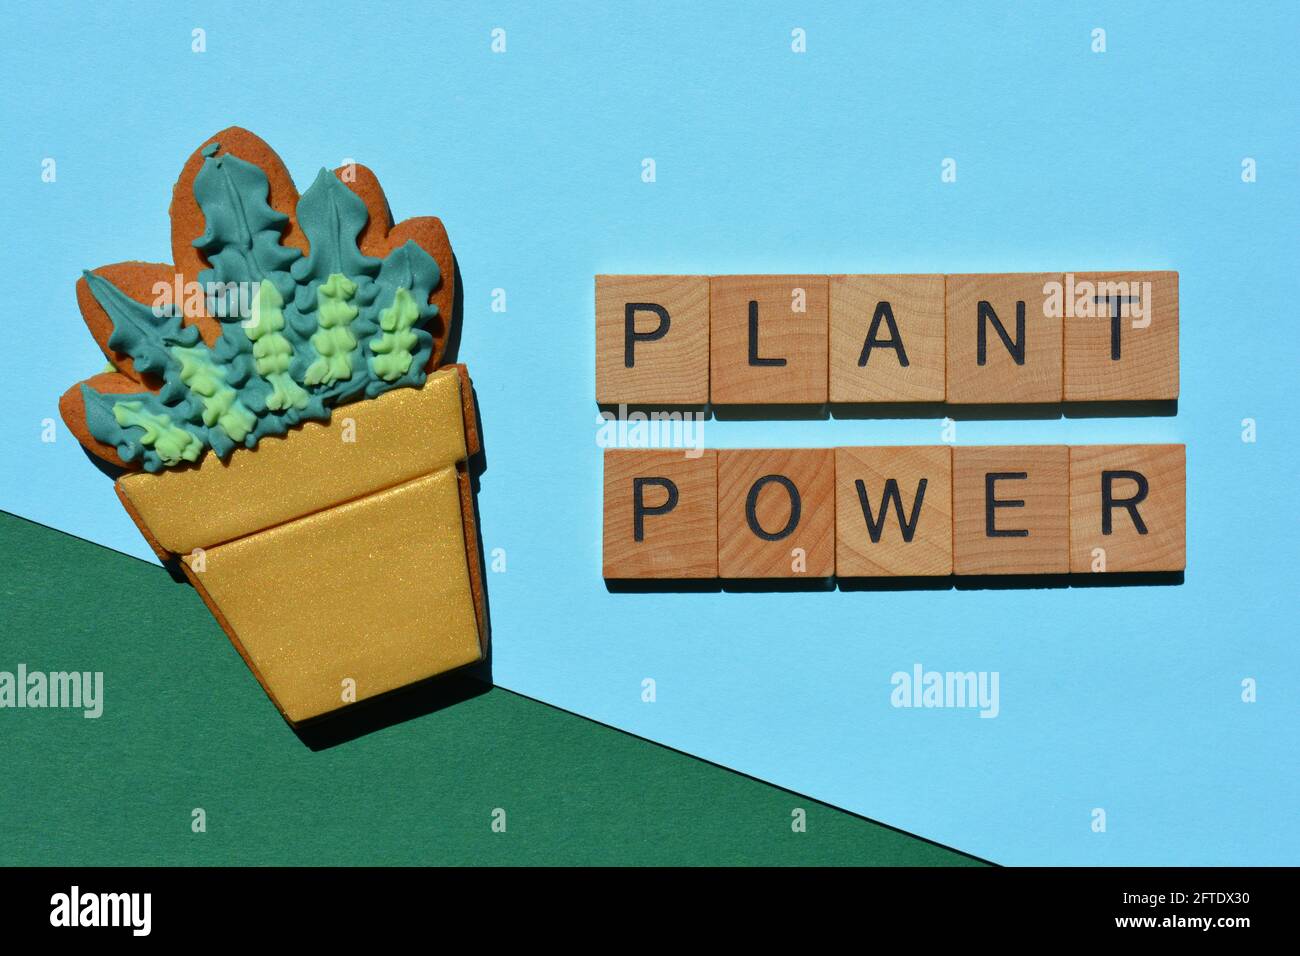 Pflanze Power, Wörter neben vereisten und dekorierten Lebkuchenkeks in Form eines Blumentopfes Stockfoto